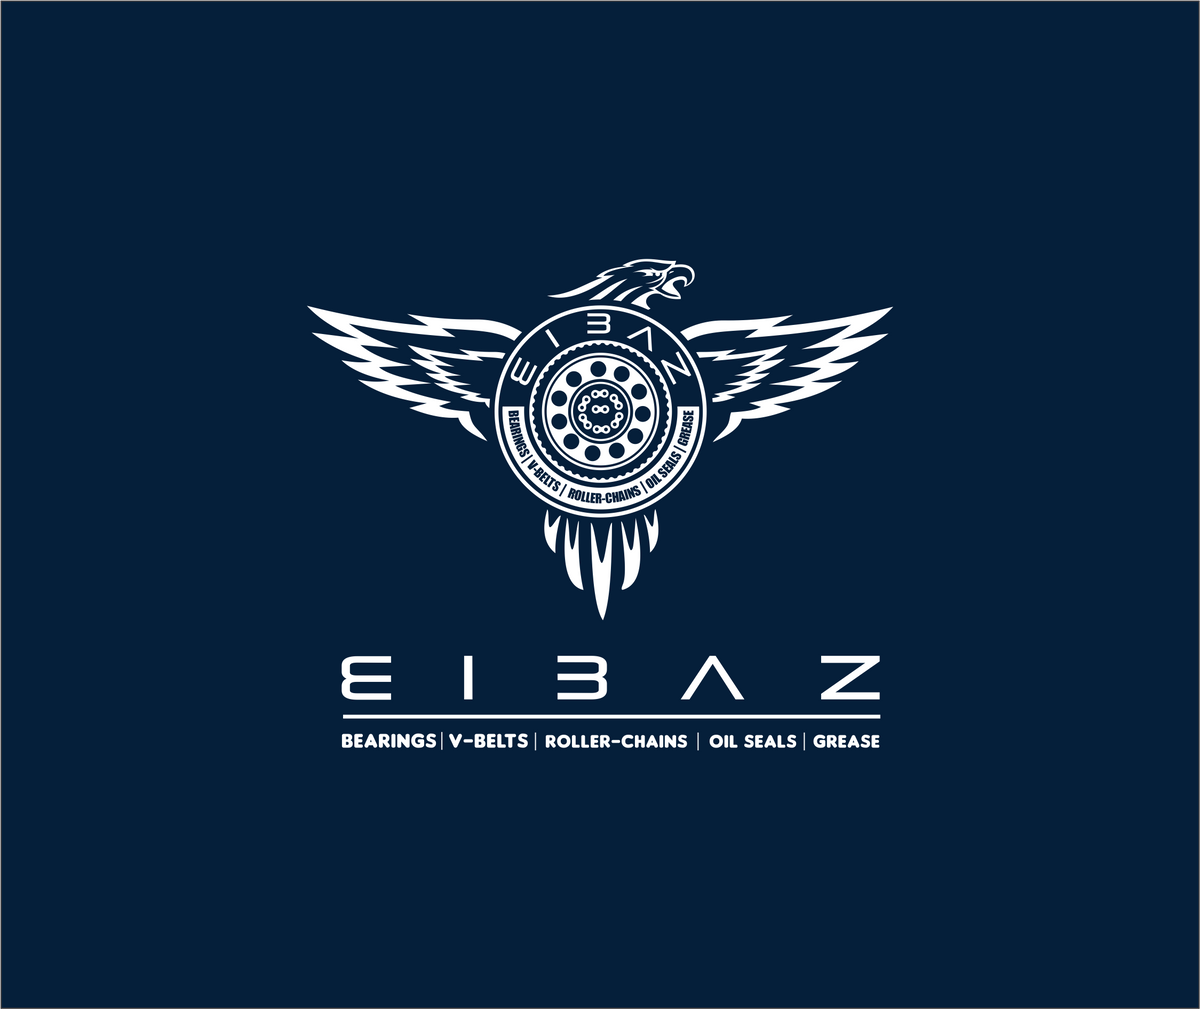 ElBaz